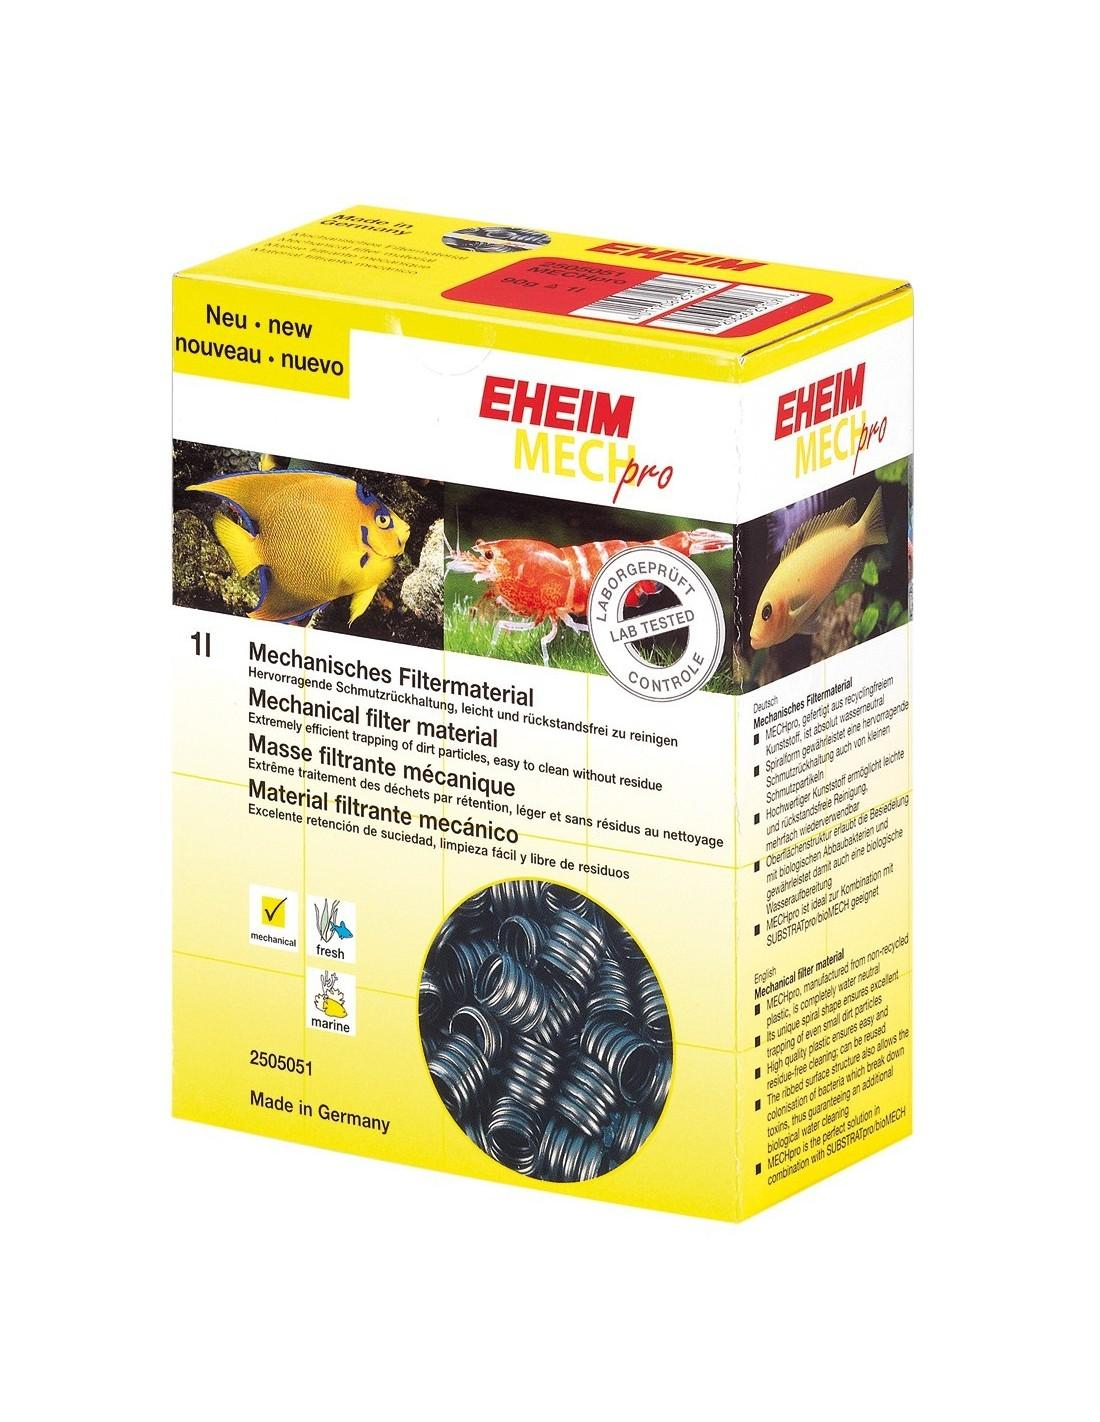 EHEIM mech pro 90g mechanisch filtermedium